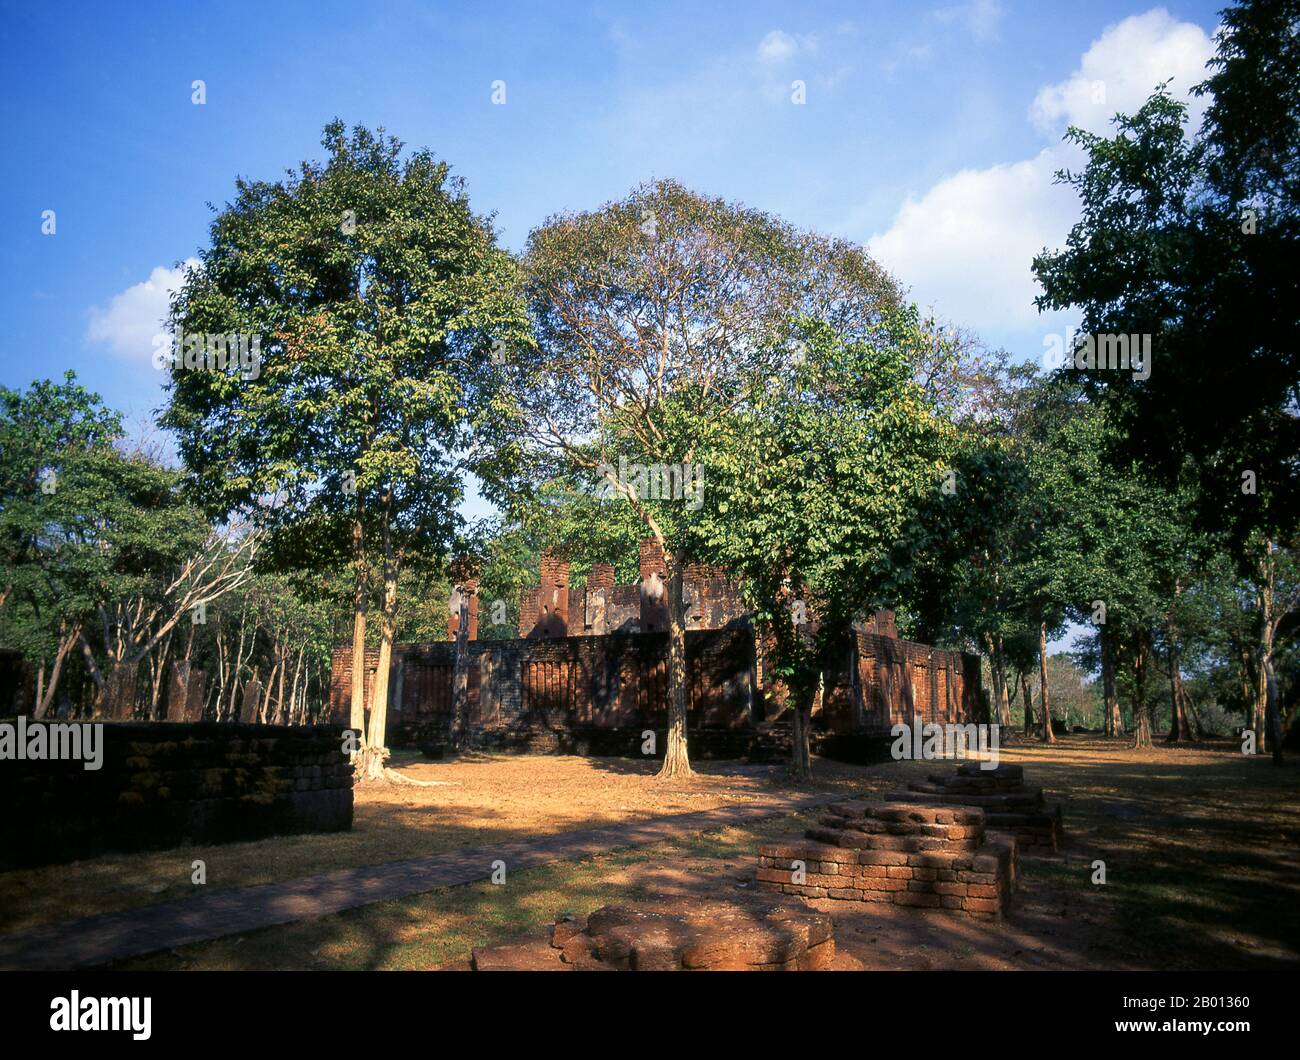 Thailandia: Wat Phra Sri Ariyabot, Kamphaeng Phet Parco storico. Kamphaeng Phet Historical Park nel centro della Thailandia era una volta parte del regno di Sukhothai che fiorì nel XIII e XIV secolo. Il regno di Sukhothai fu il primo dei regni tailandesi. Foto Stock